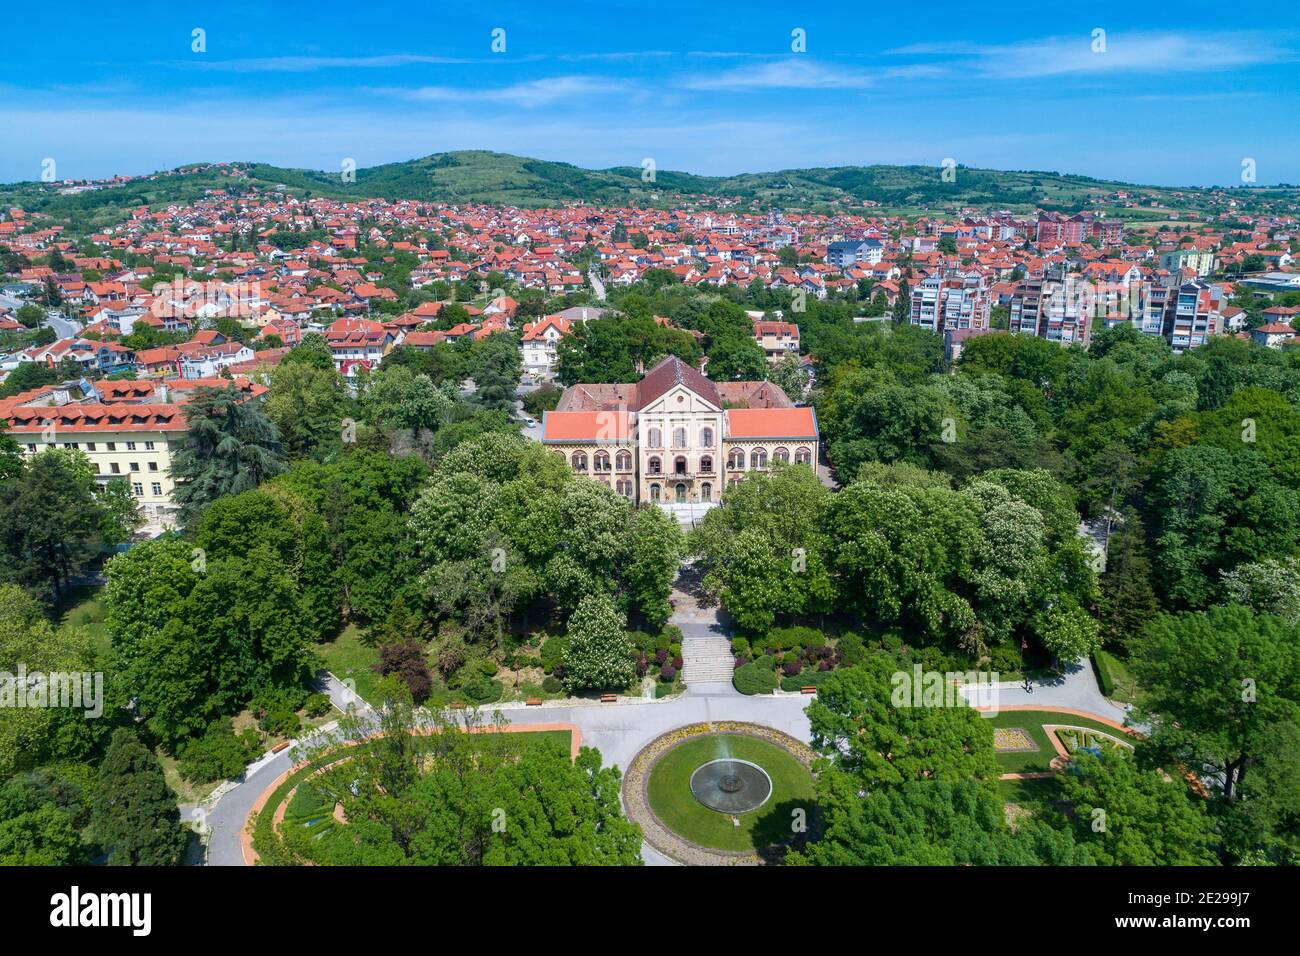 Vue aérienne sur Arandjelovac, le parc et le château de Sumadija, Serbie centrale Banque D'Images